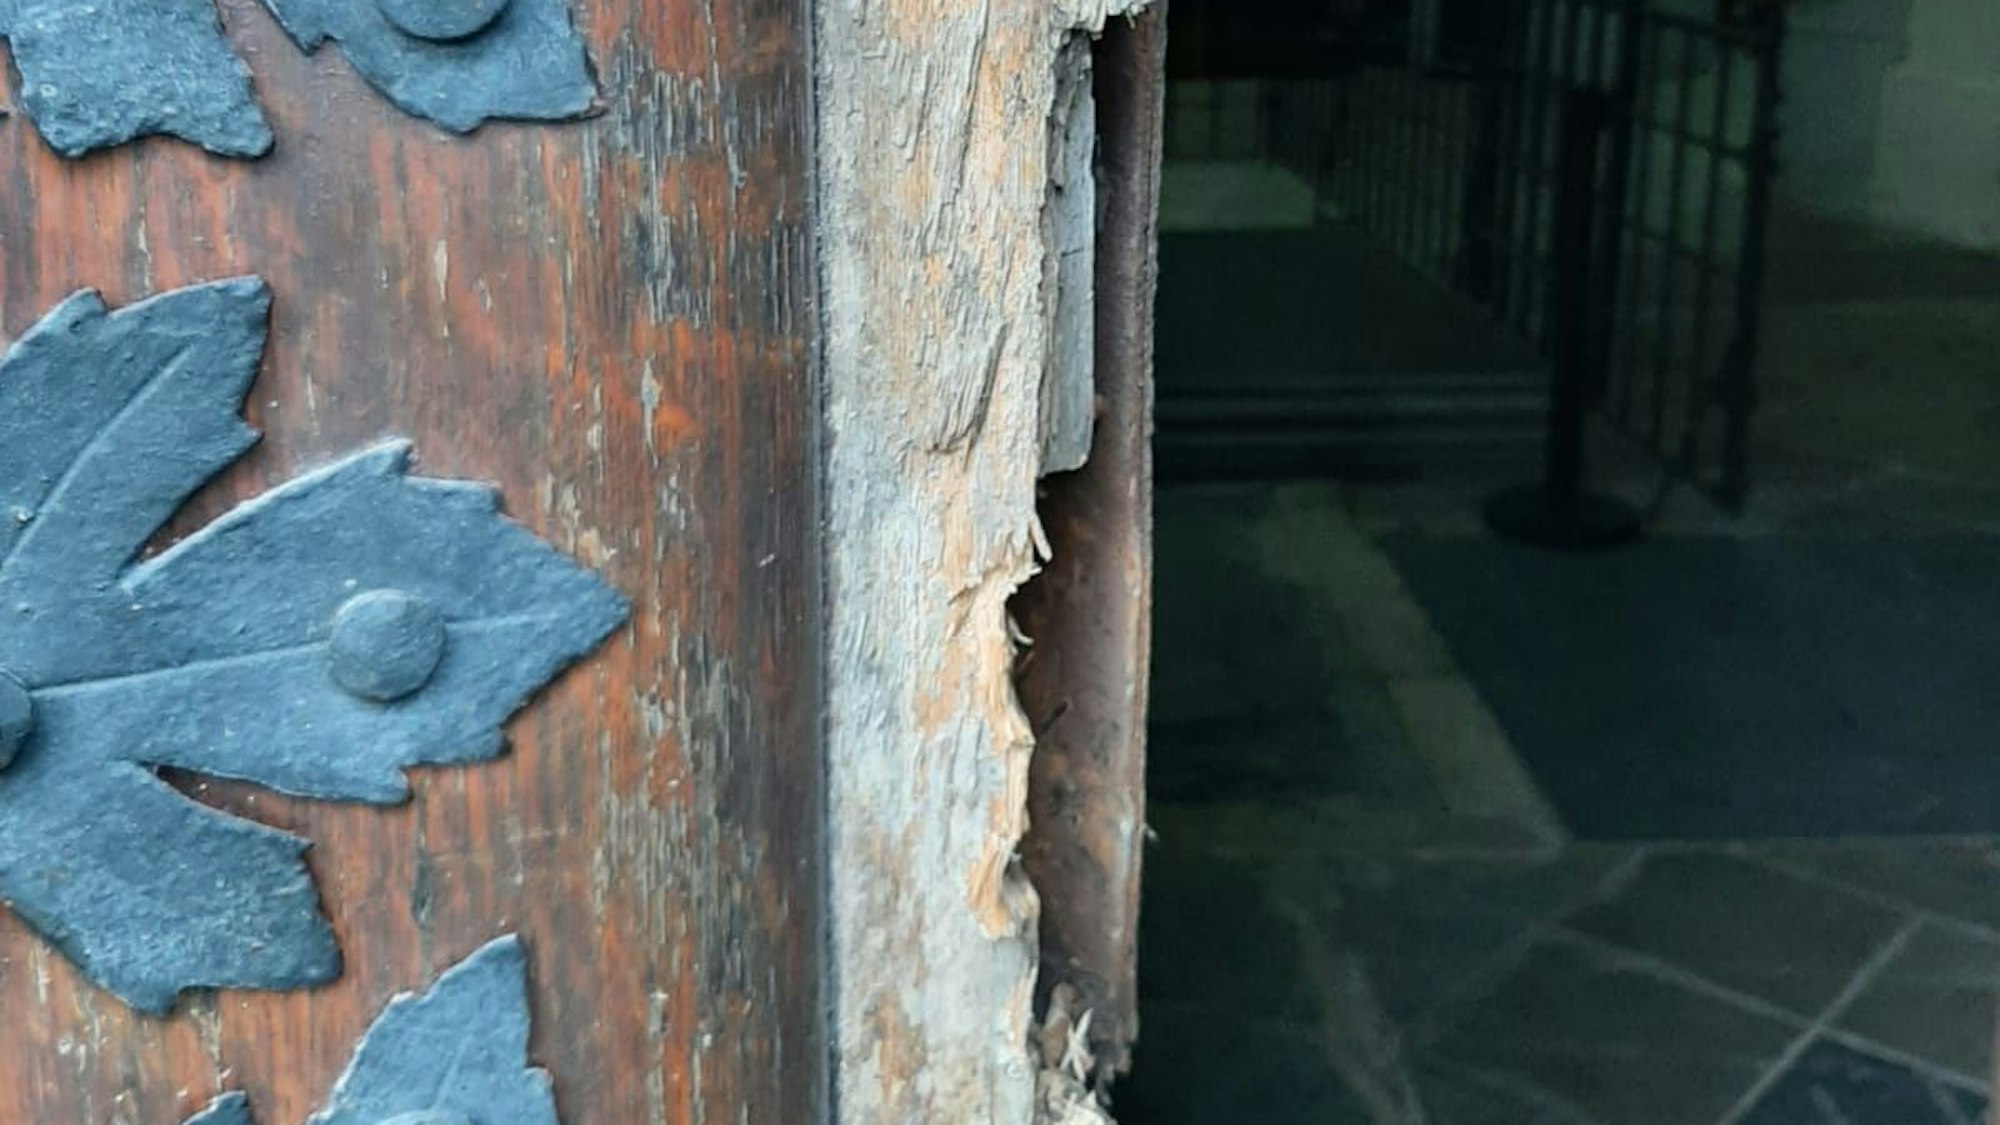 Eine Tür mit Eisenbeschlägen ist an der Stelle, wo sonst das Schloss sitzt, aufgebrochen.